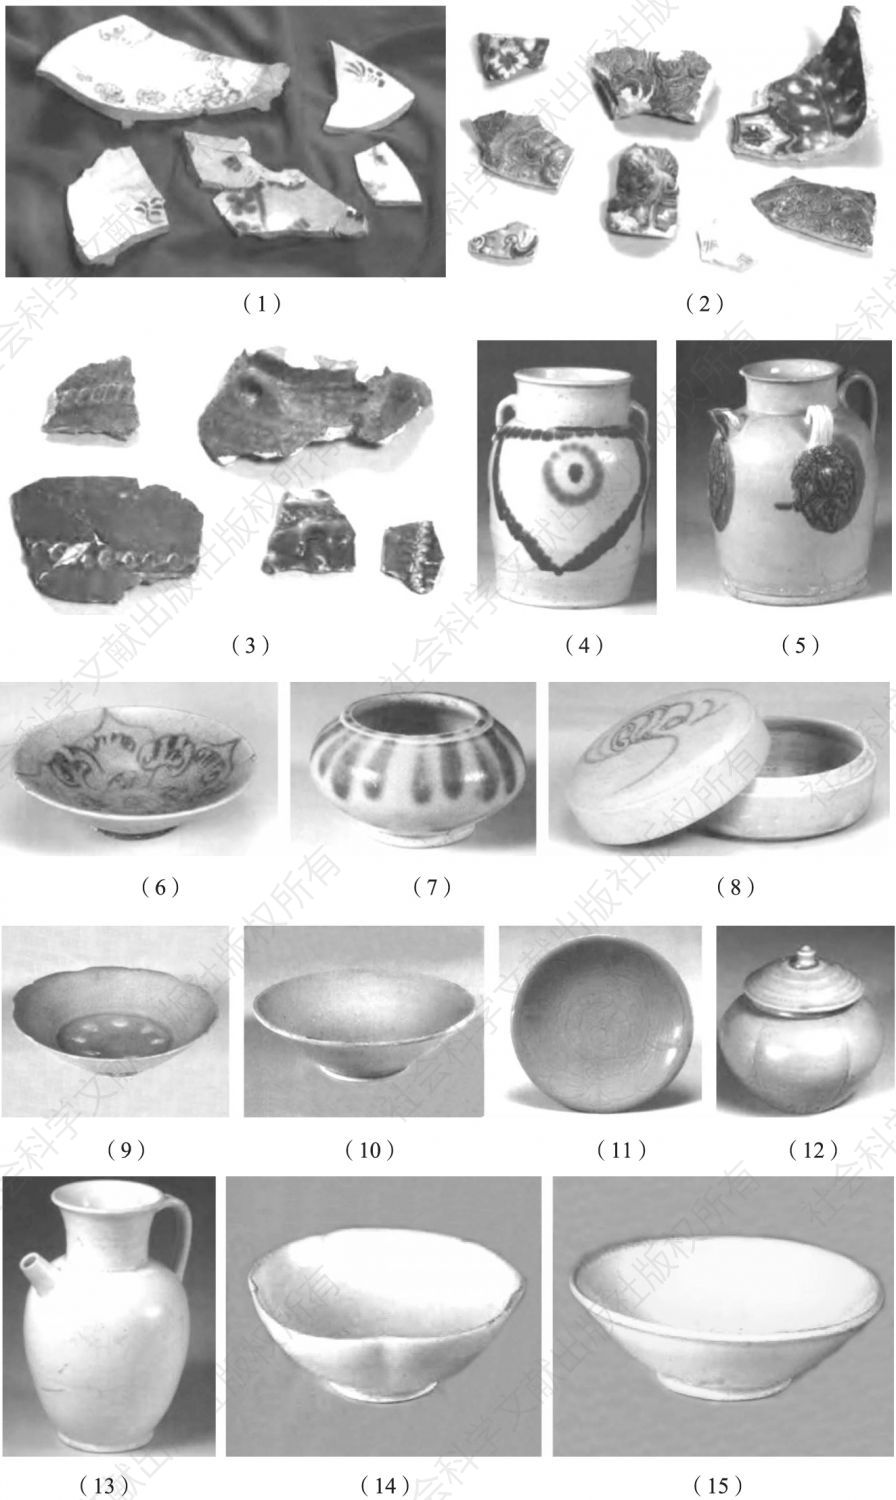 图2-2 扬州出土的陶瓷器标本